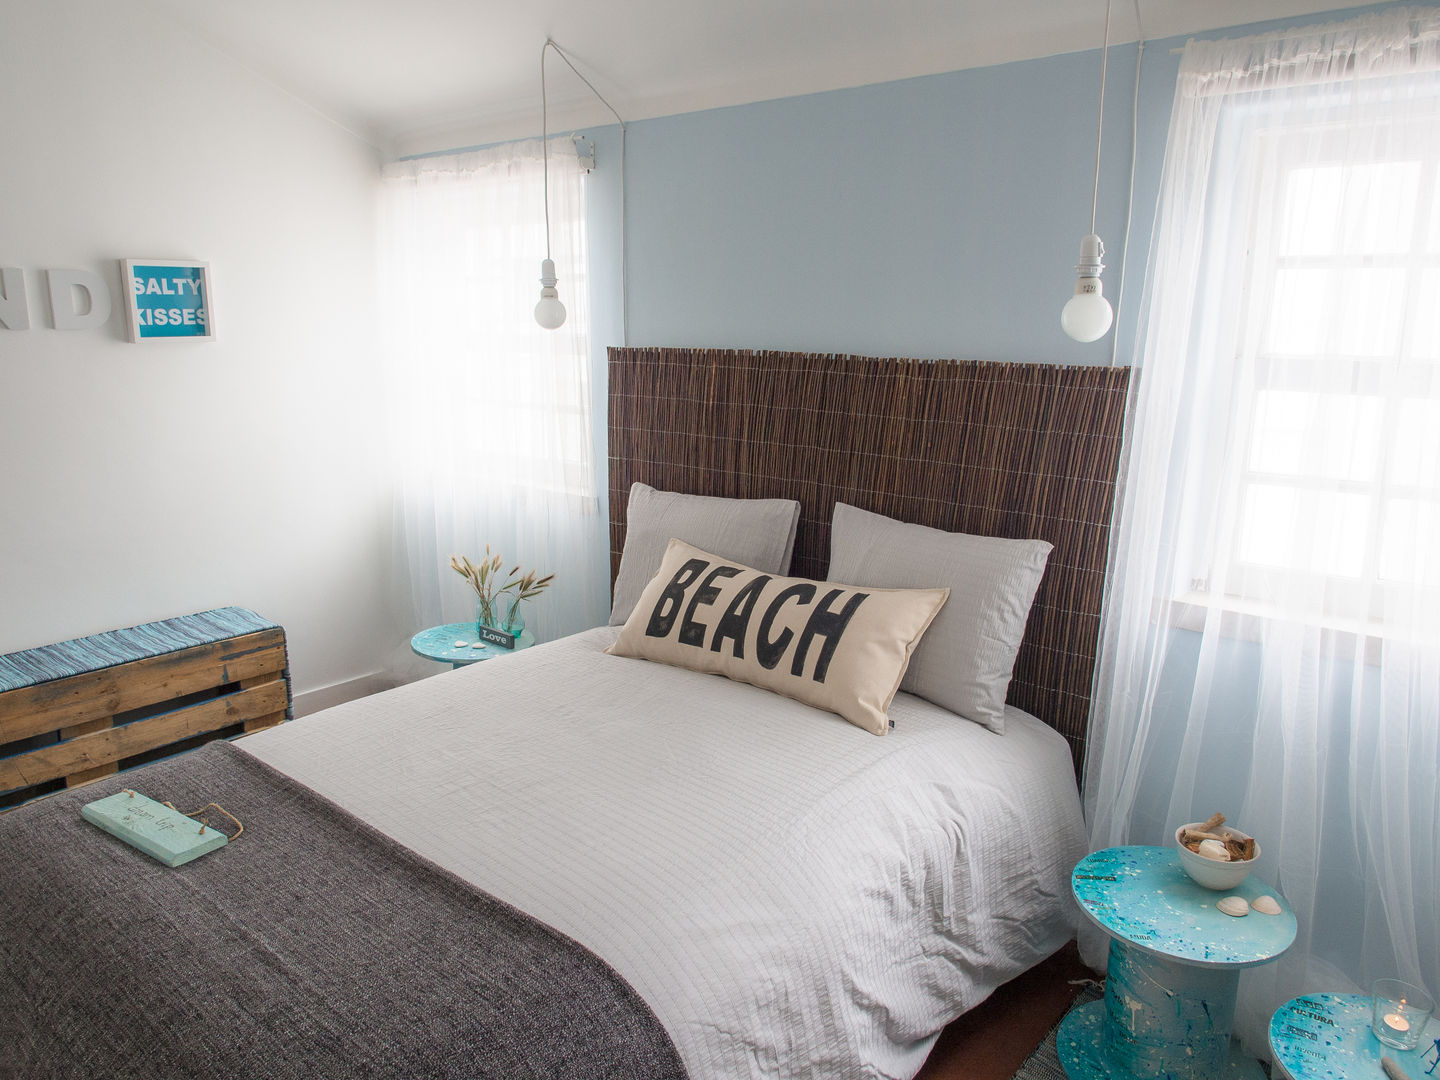 NiceWay Cascais Hostel - Beach Bedroom - Cascais, MUDA Home Design MUDA Home Design 商业空间 飯店